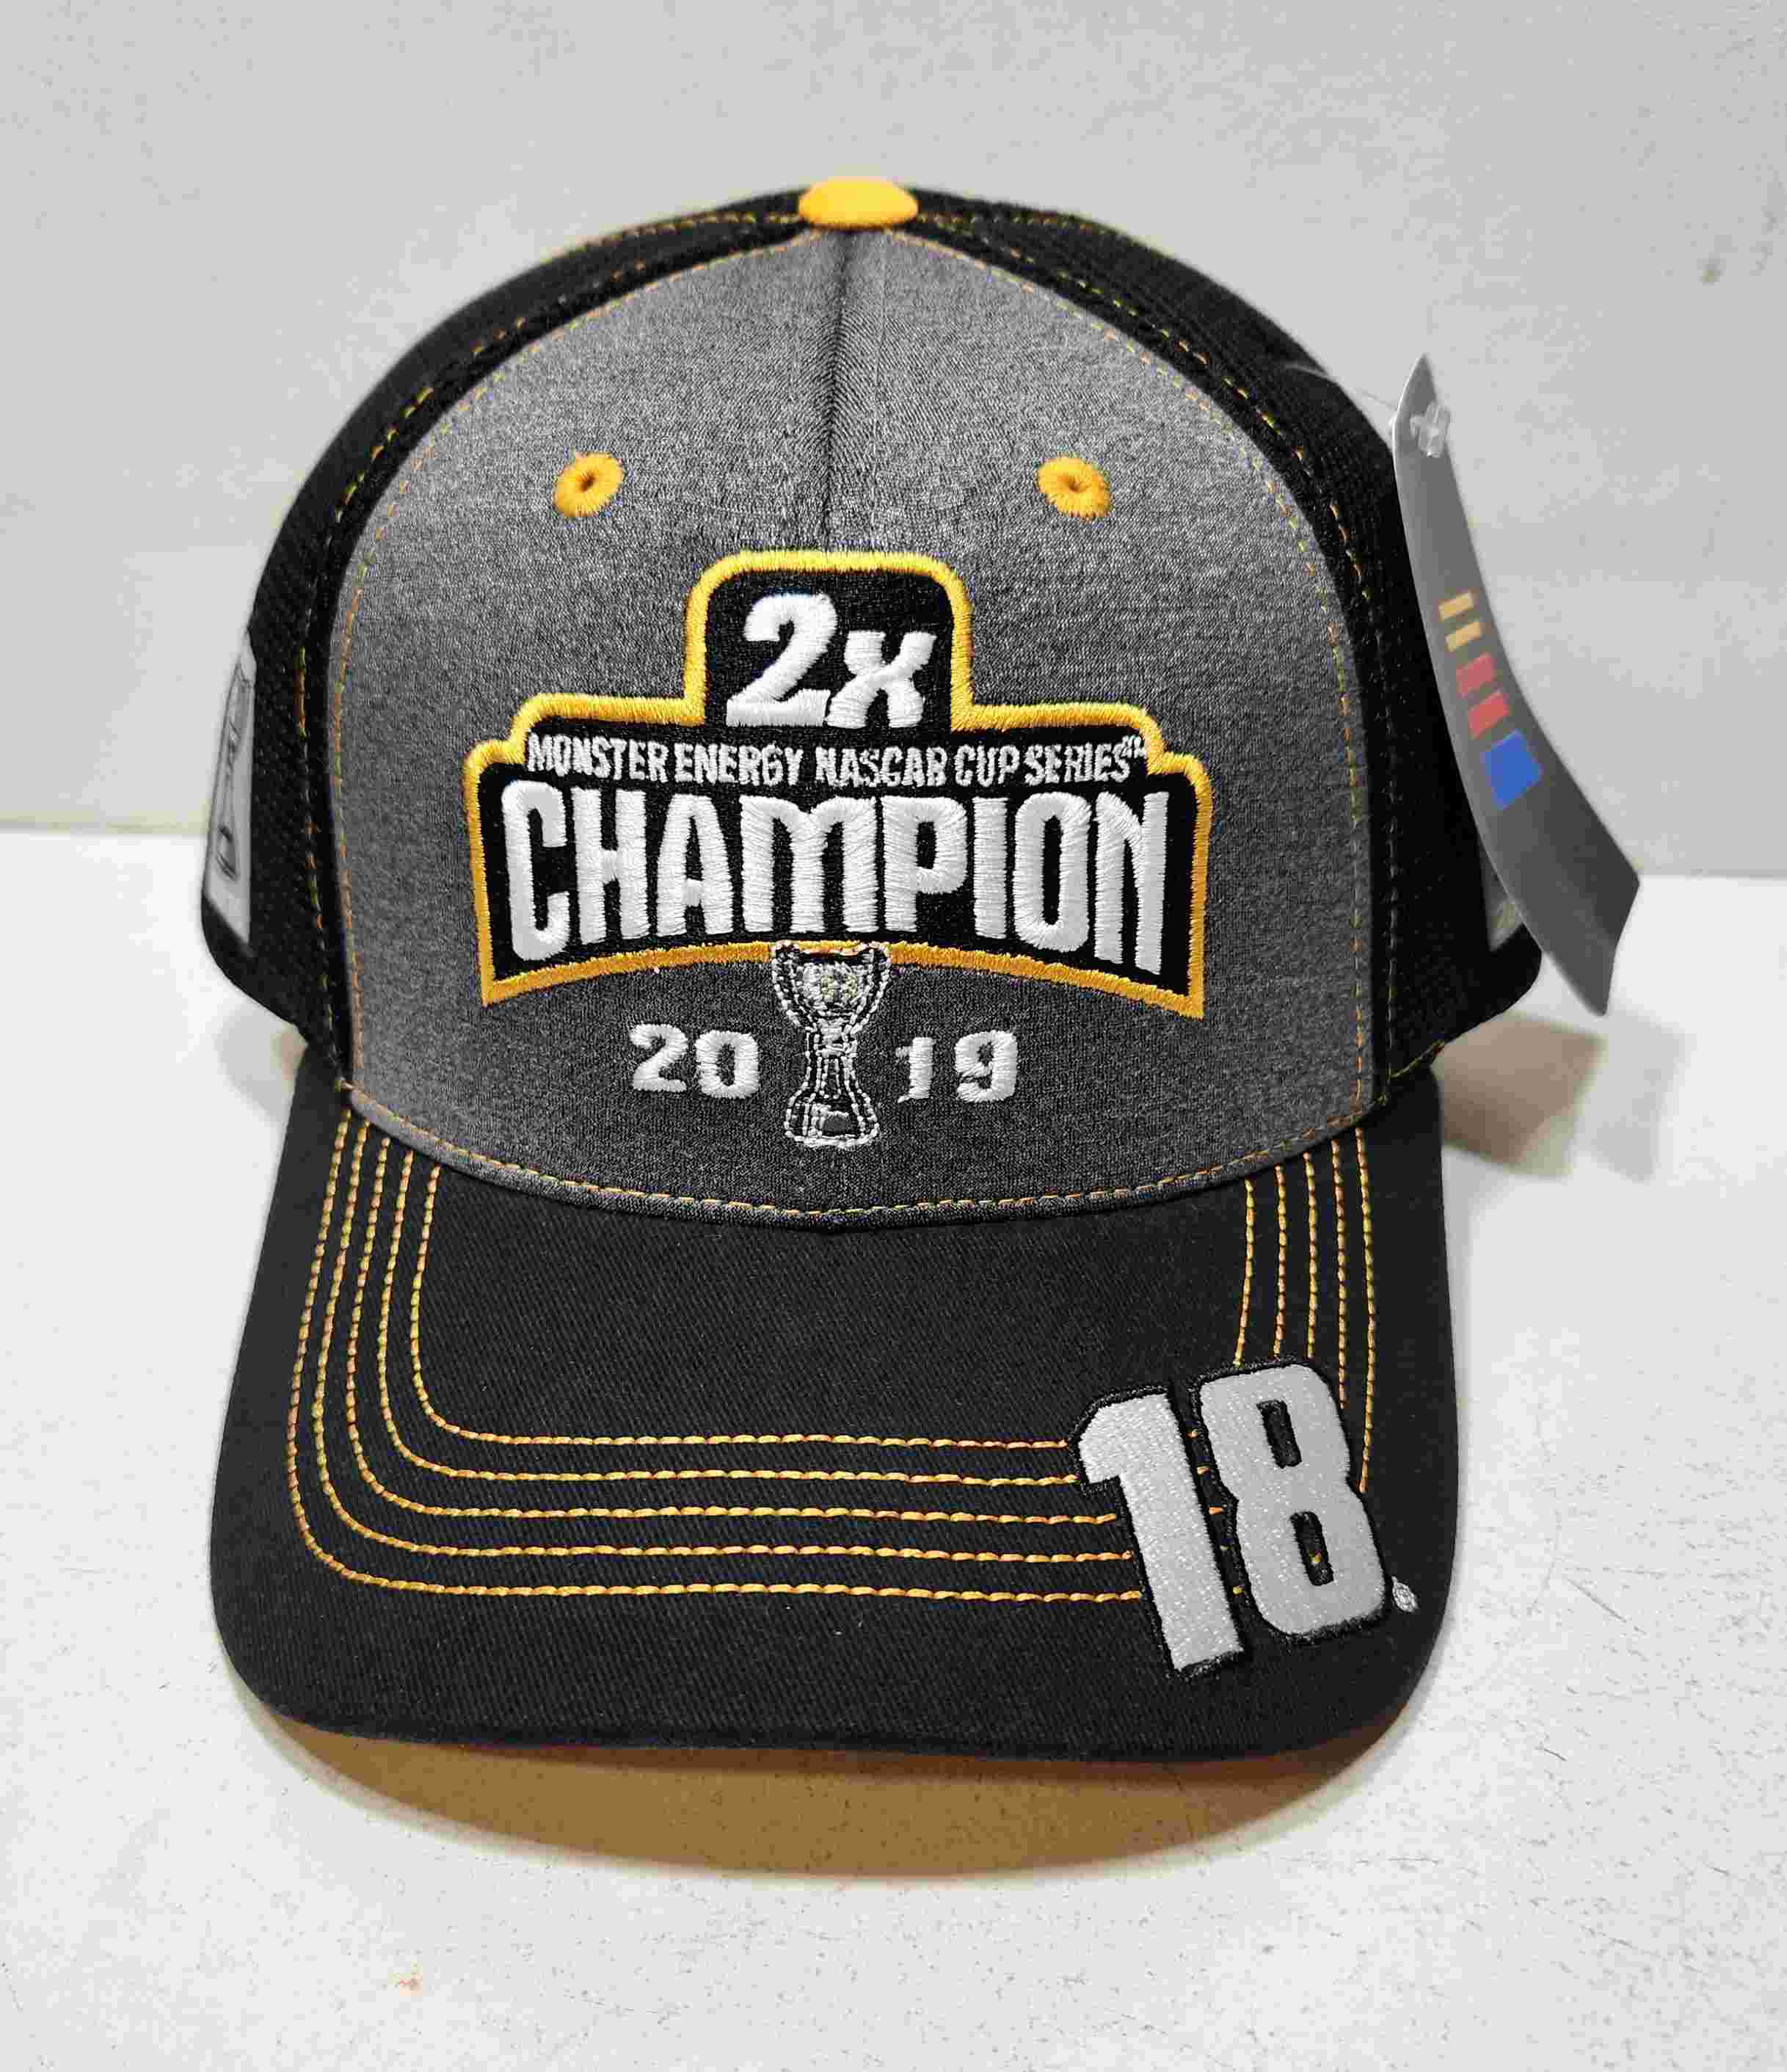 2019 Kyle Busch M&M's "Monster Energy Champion" Trophy cap